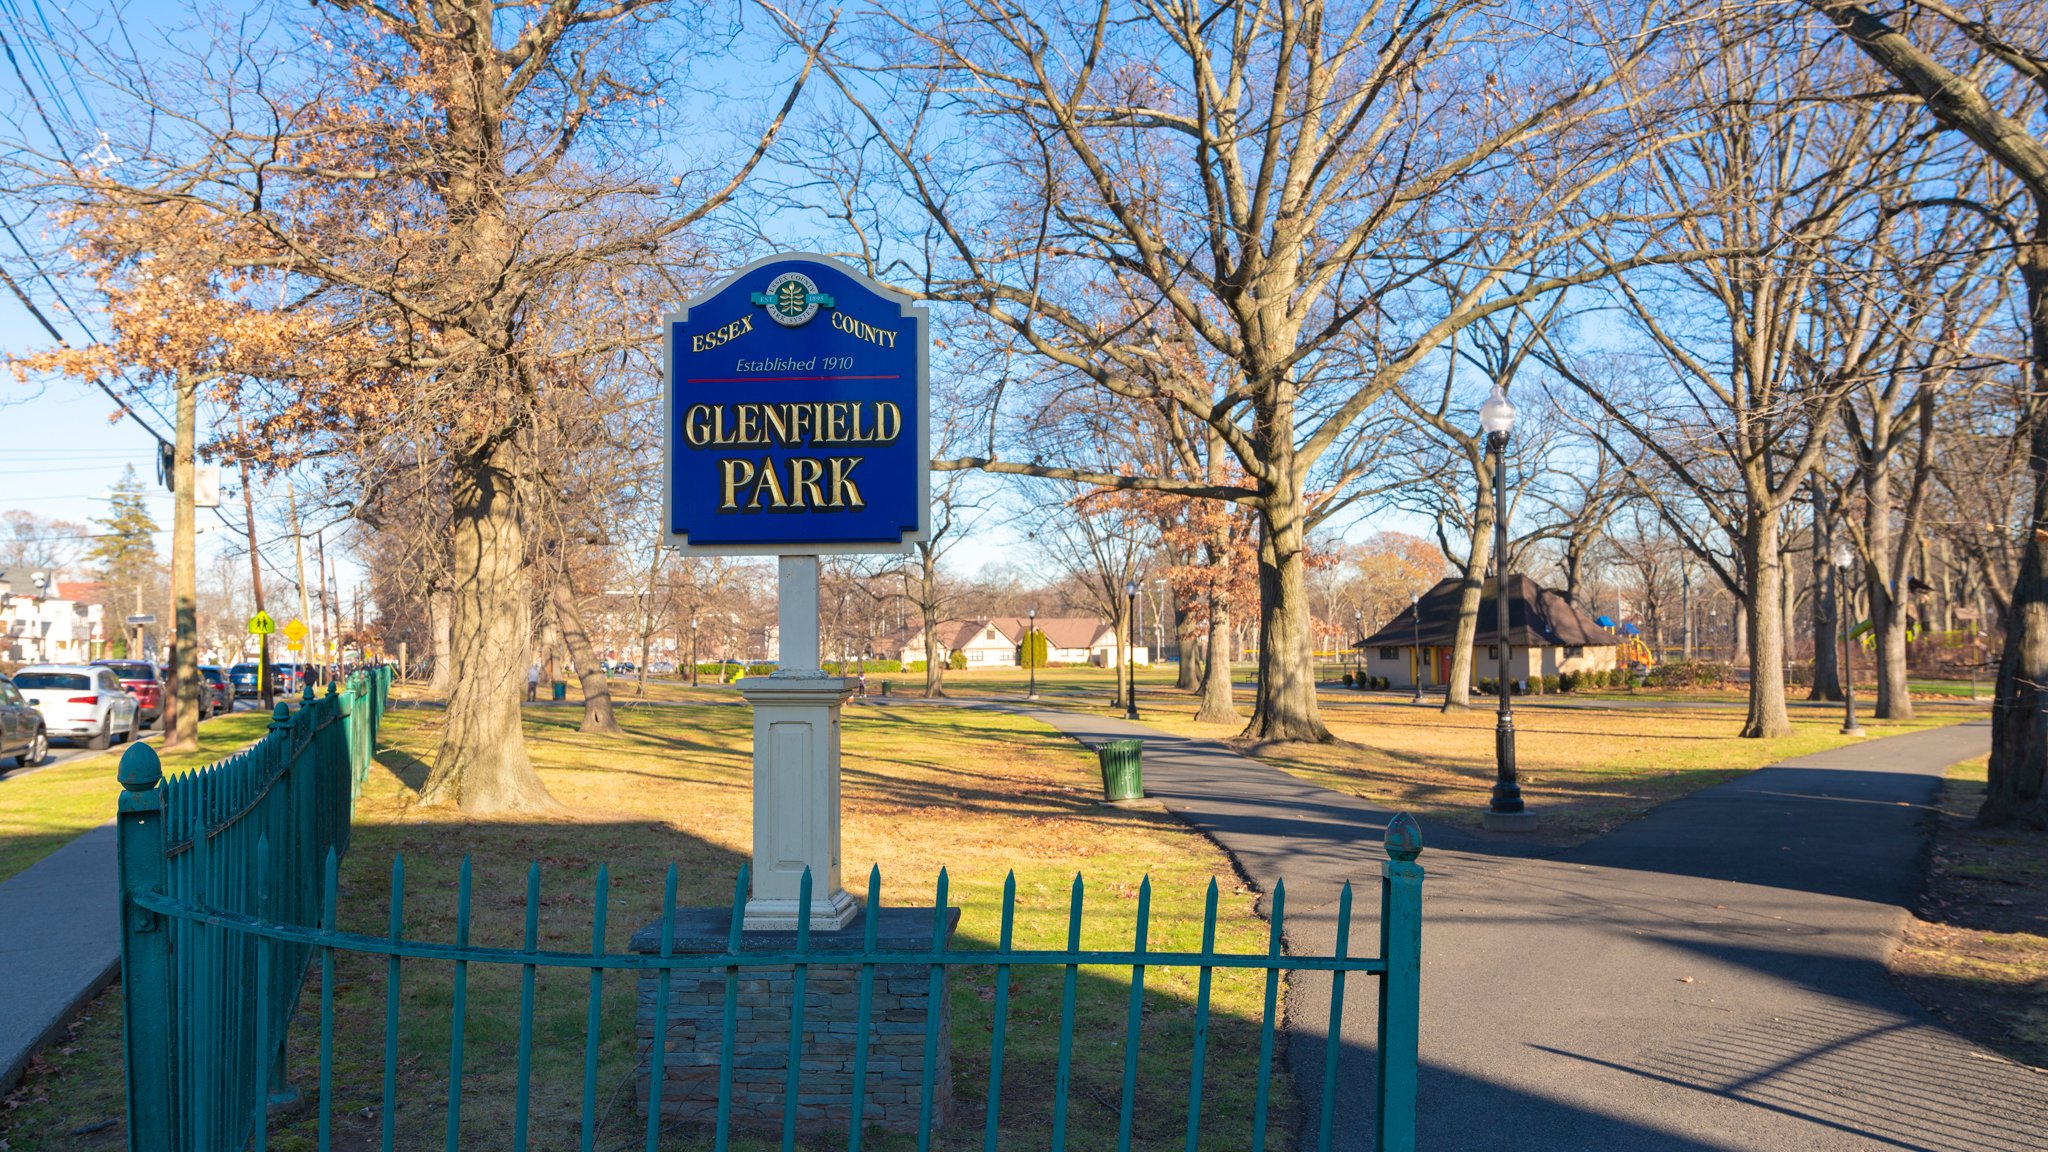 Glenfield Park